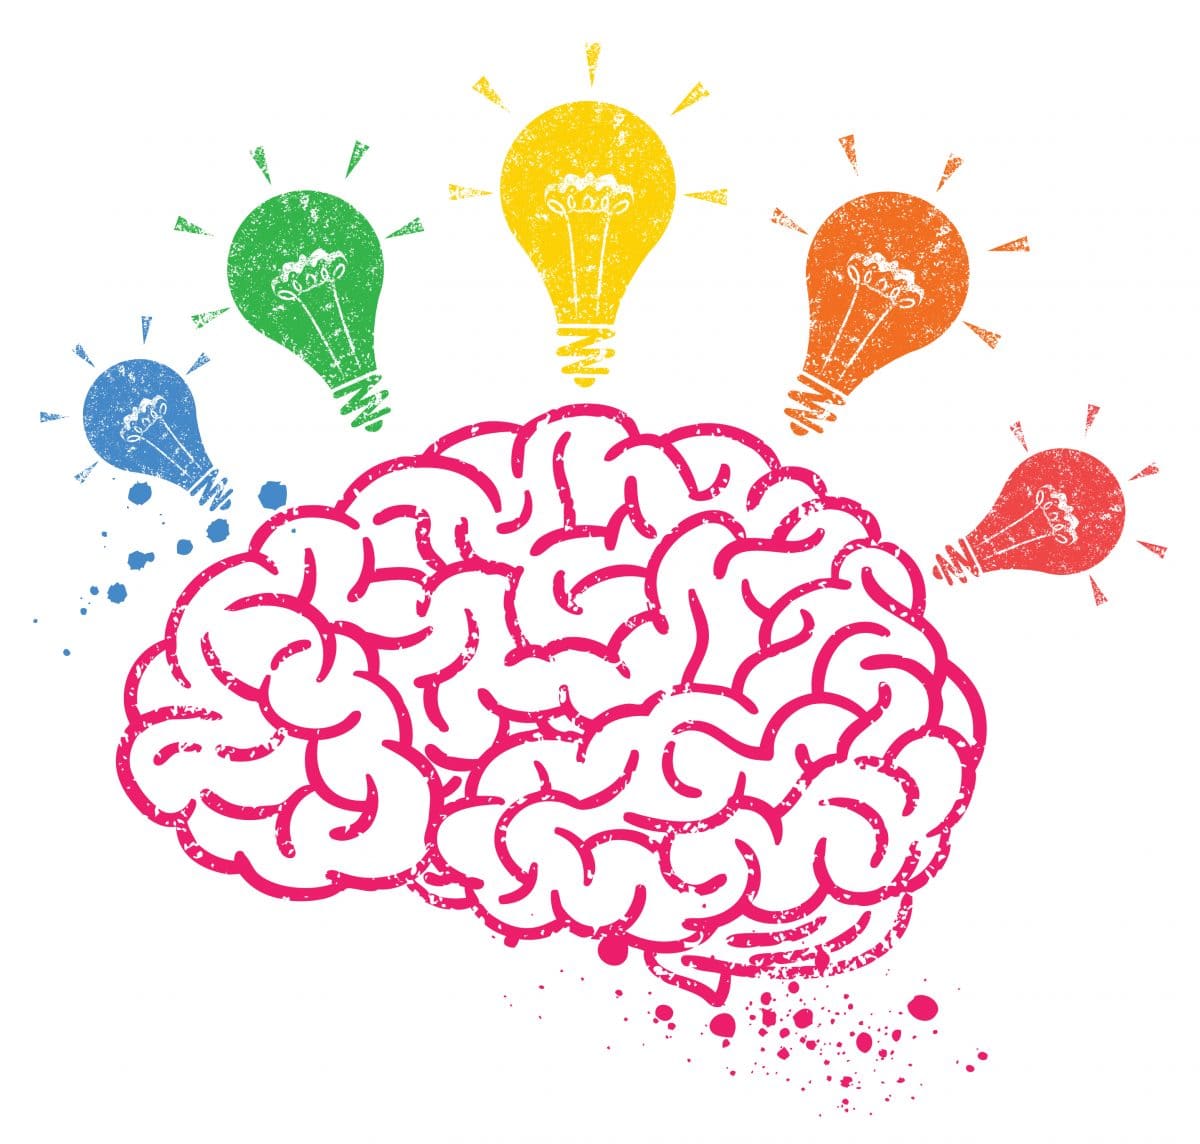 7 Passos para ir Além do Famigerado "Brainstorming" de Ideias